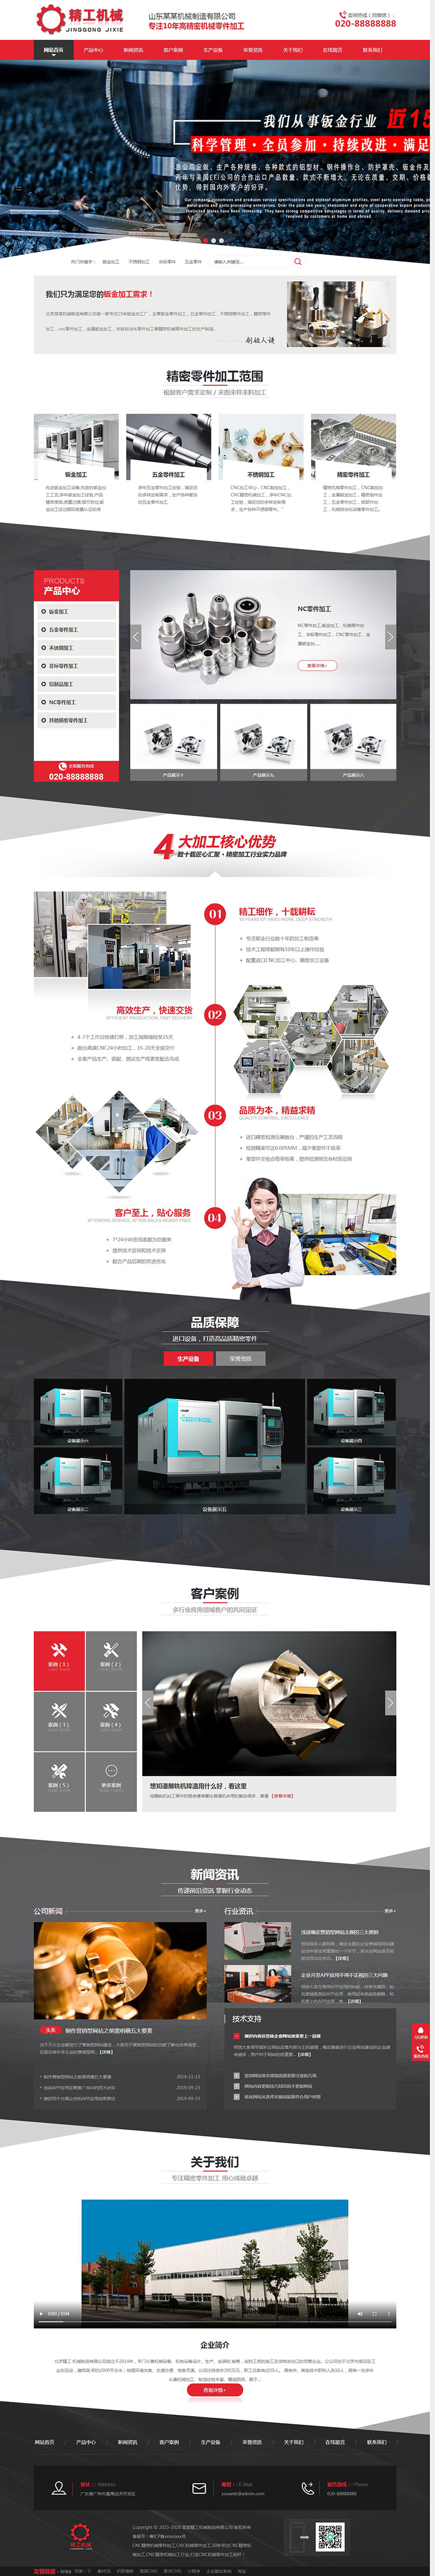 营销型机械零件钣金加工机械电子设备公司网站织梦模板(带手机)